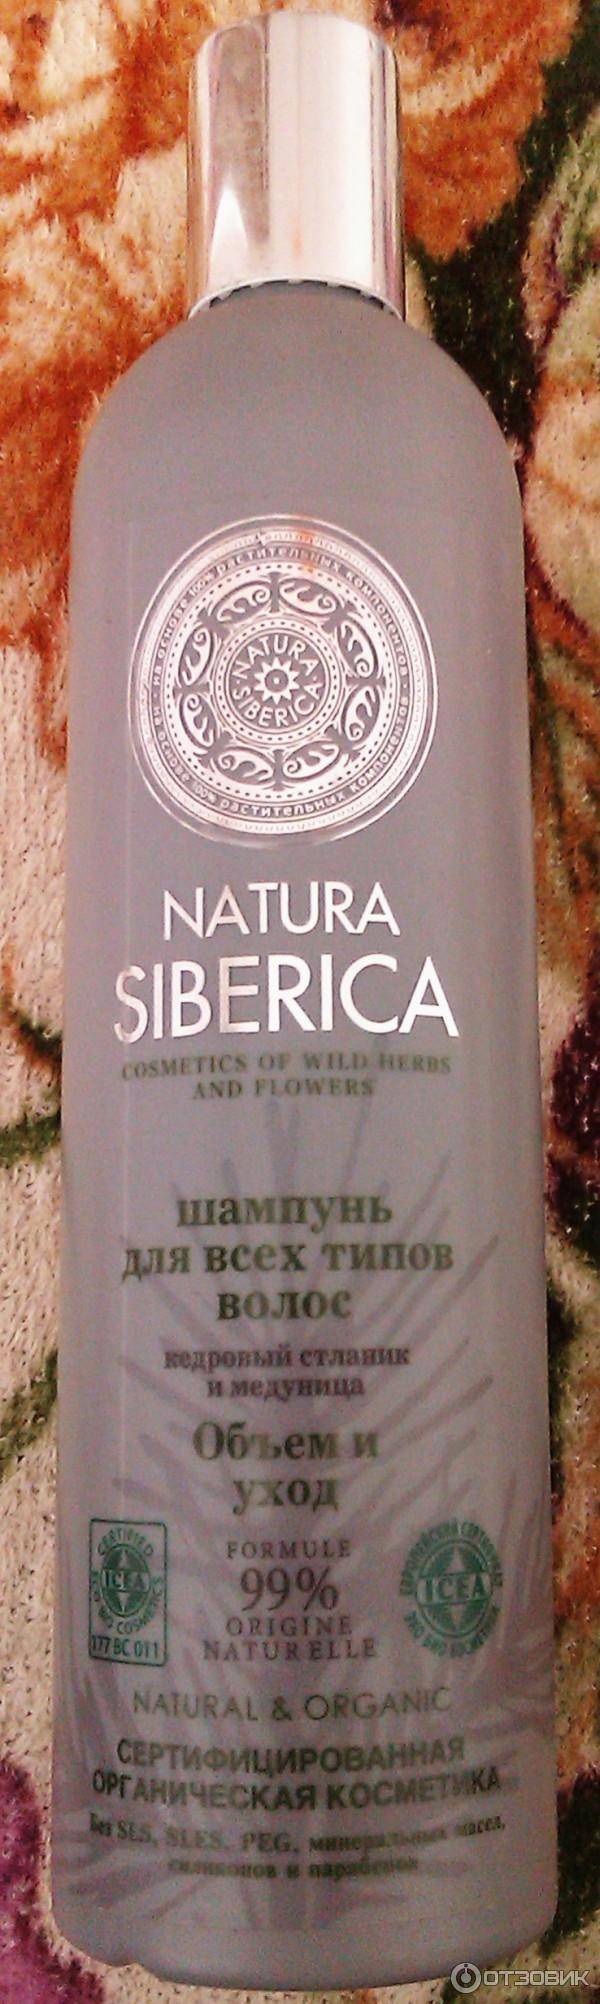 Шампуни natura siberica – обзор всех линеек и отзывы